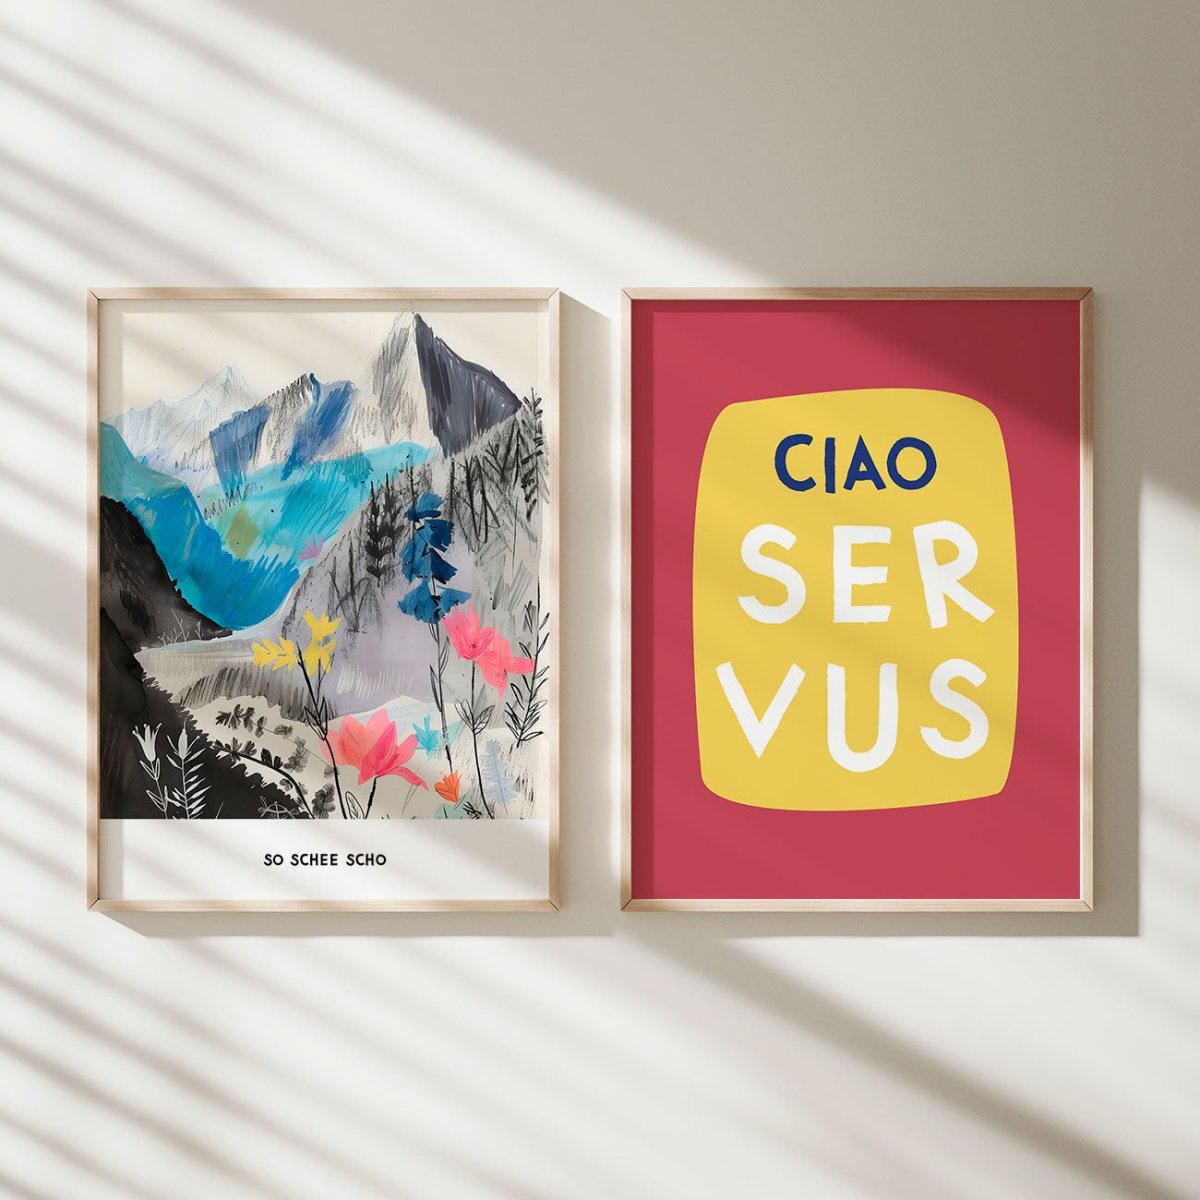 Ciao Servus • bayrisches Typografie Poster in pink gelb • bayerischer Spruch • Wanddeko für Bayern • moderner Print in bayrisch - vonSUSI